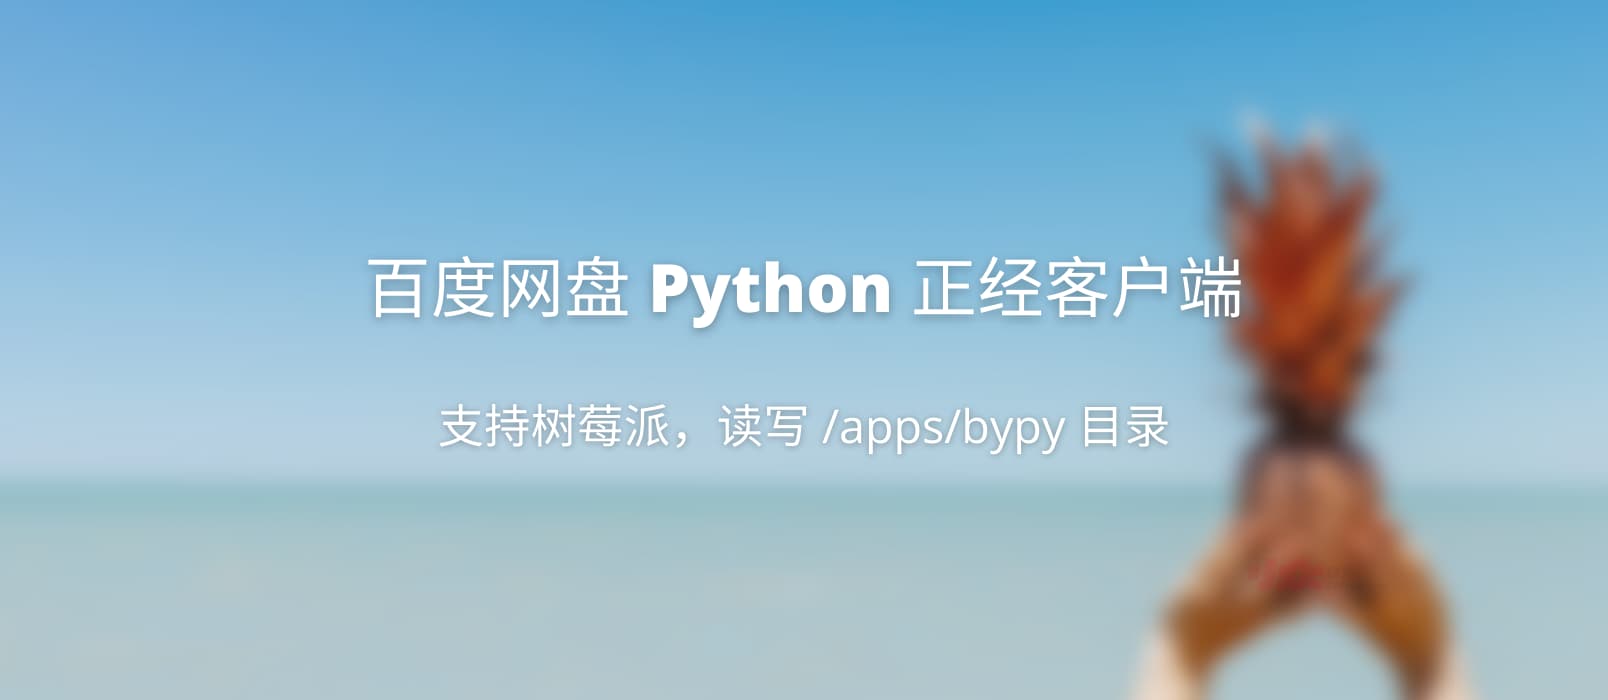 百度网盘 Python 客户端 - 正经客户端，可在树莓派上使用